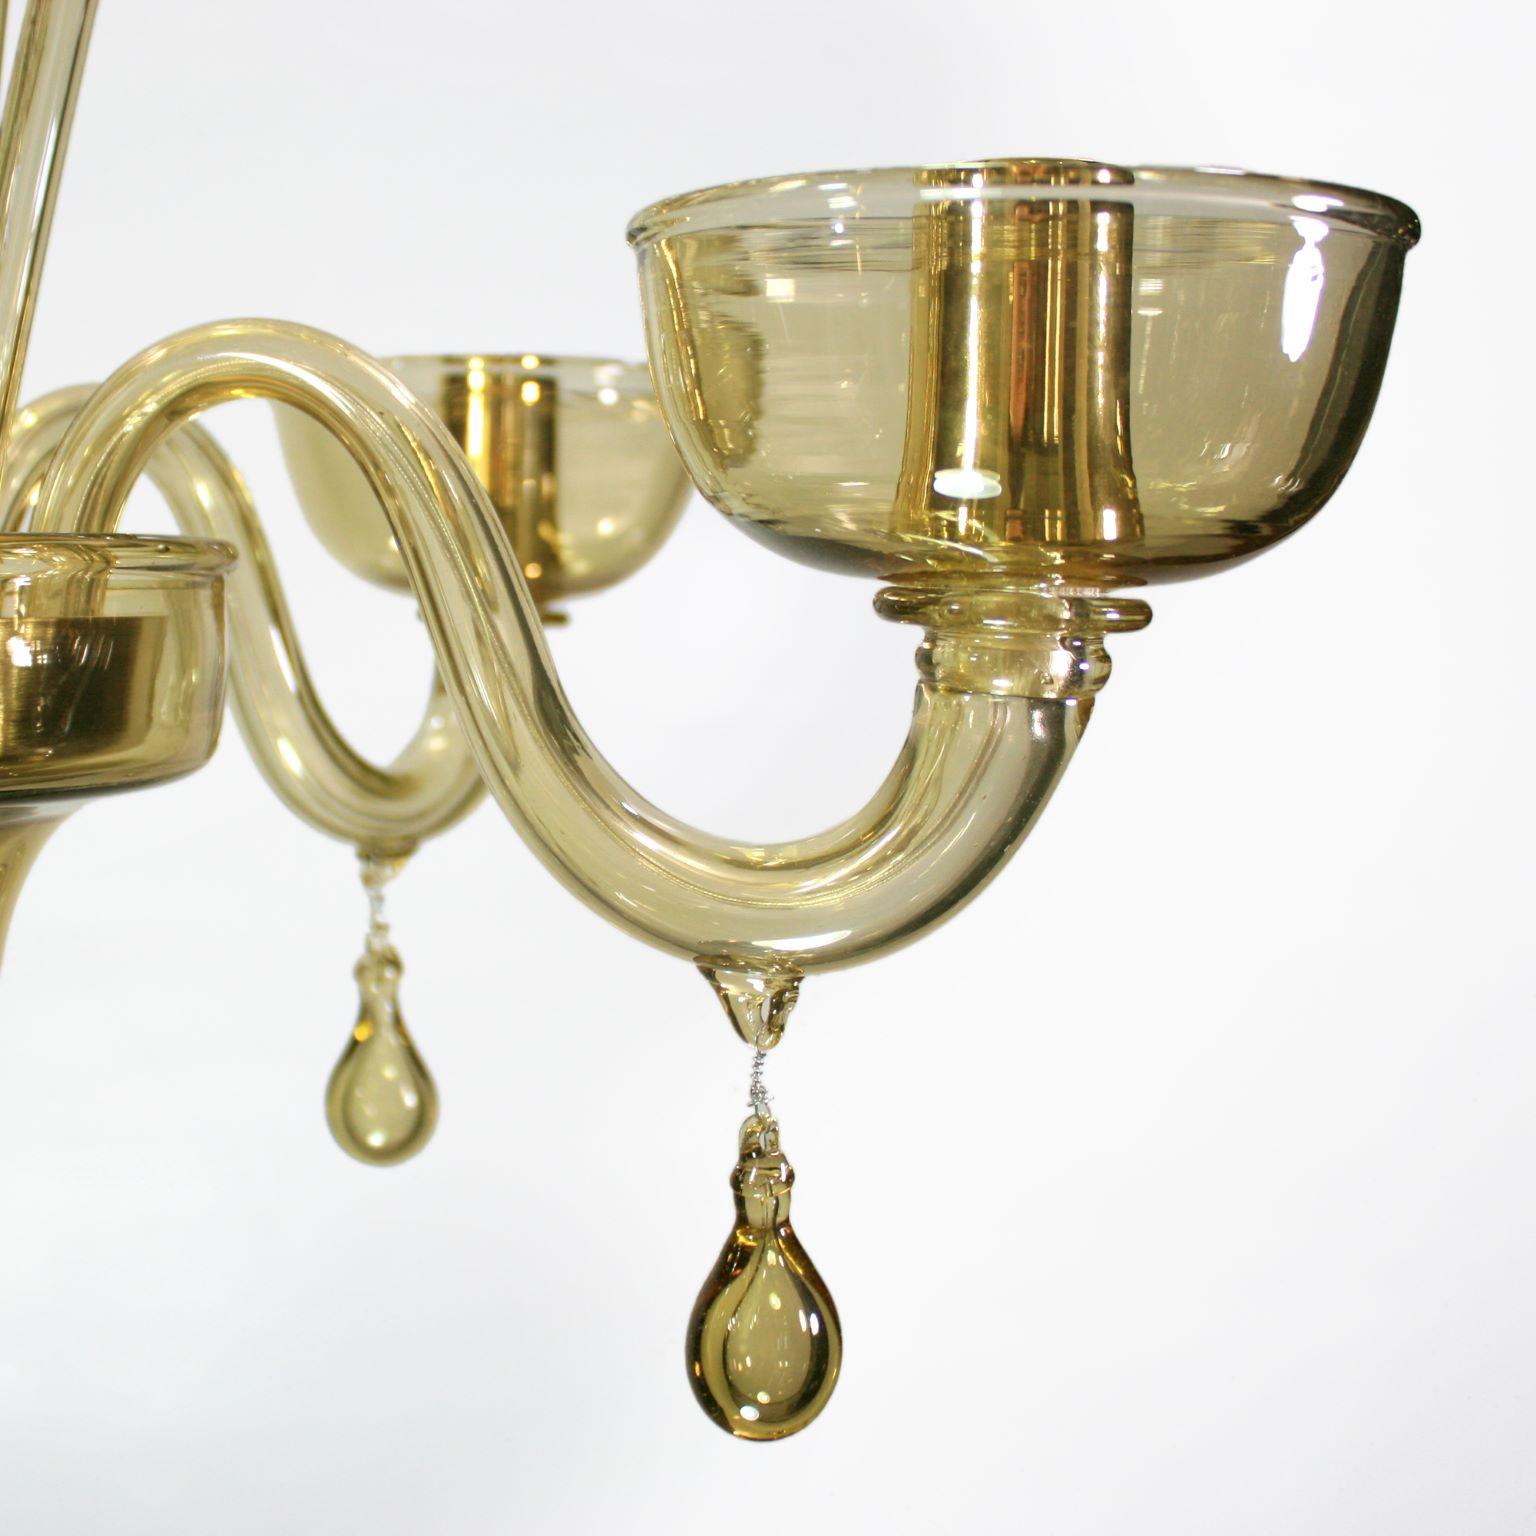 Dieser Kronleuchter aus venezianischem Glas ist aus strohglattem Muranoglas gefertigt und verfügt über Pastoren und Pendelleuchten. Die Arme haben nach oben gerichtete Glasschalen.
Sie zeichnet sich durch eine romantische und zarte Form aus. Der